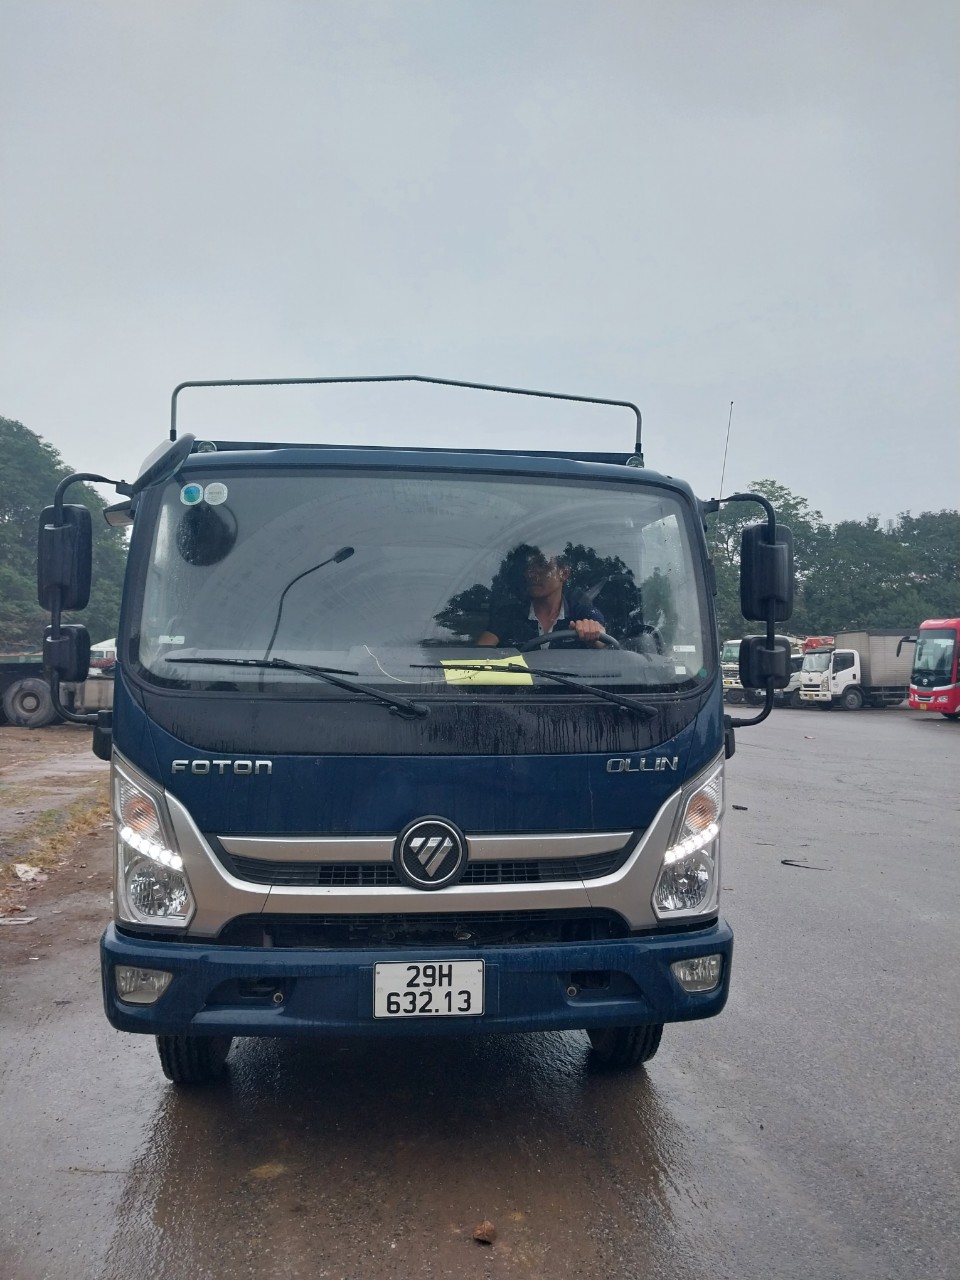 Thuê xe tải 5 tấn tại Hà Nội, thuê xe tải nhỏ chở hàng hà nội